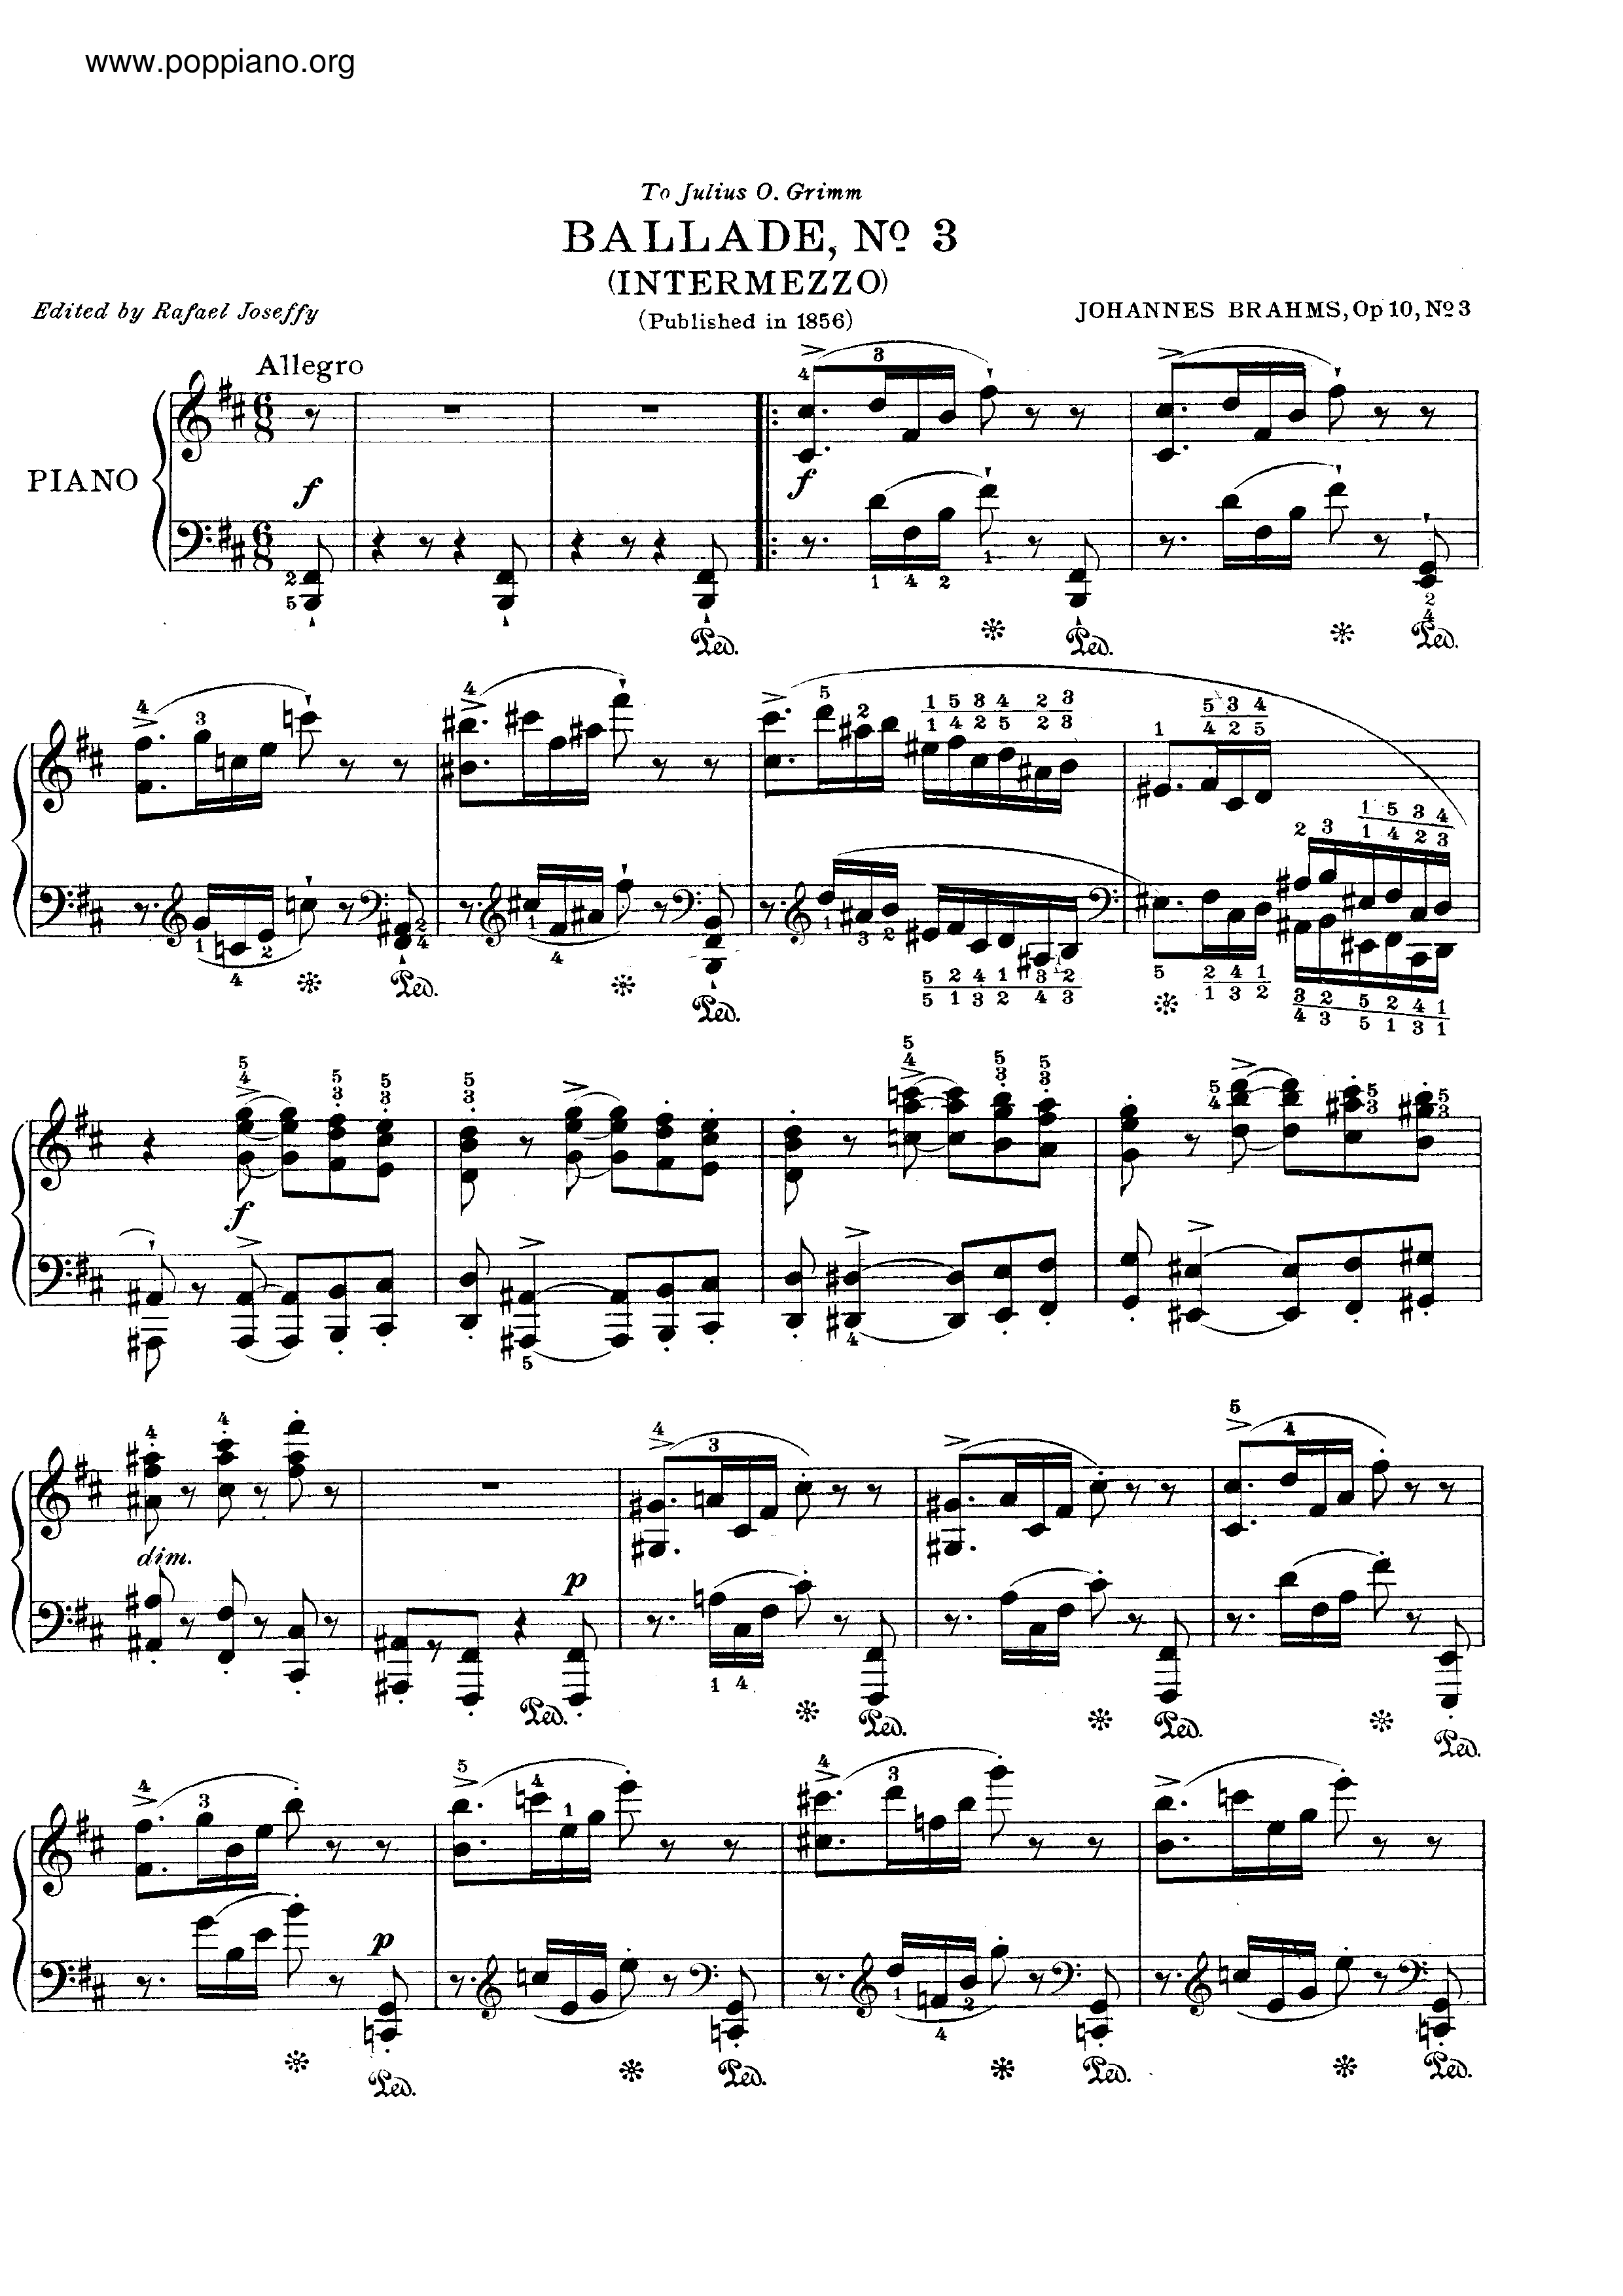 No. 3 in B minor. Intermezzo. Allegro琴谱